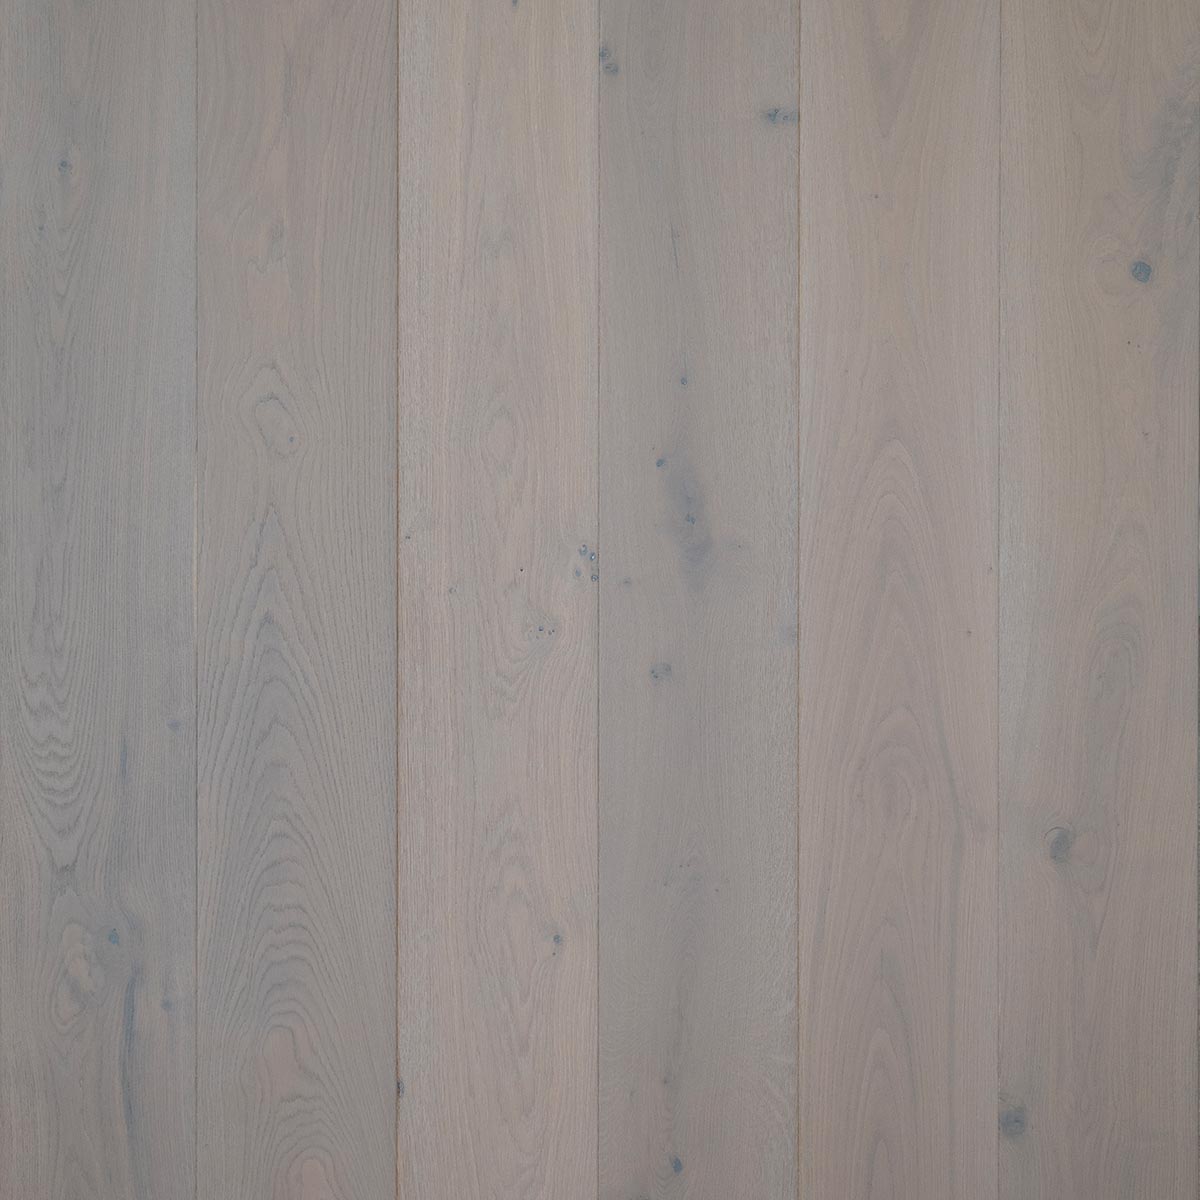 HG104 Enbourne - Brushed & Oiled Rustic Oak Bevelled Wooden Floor